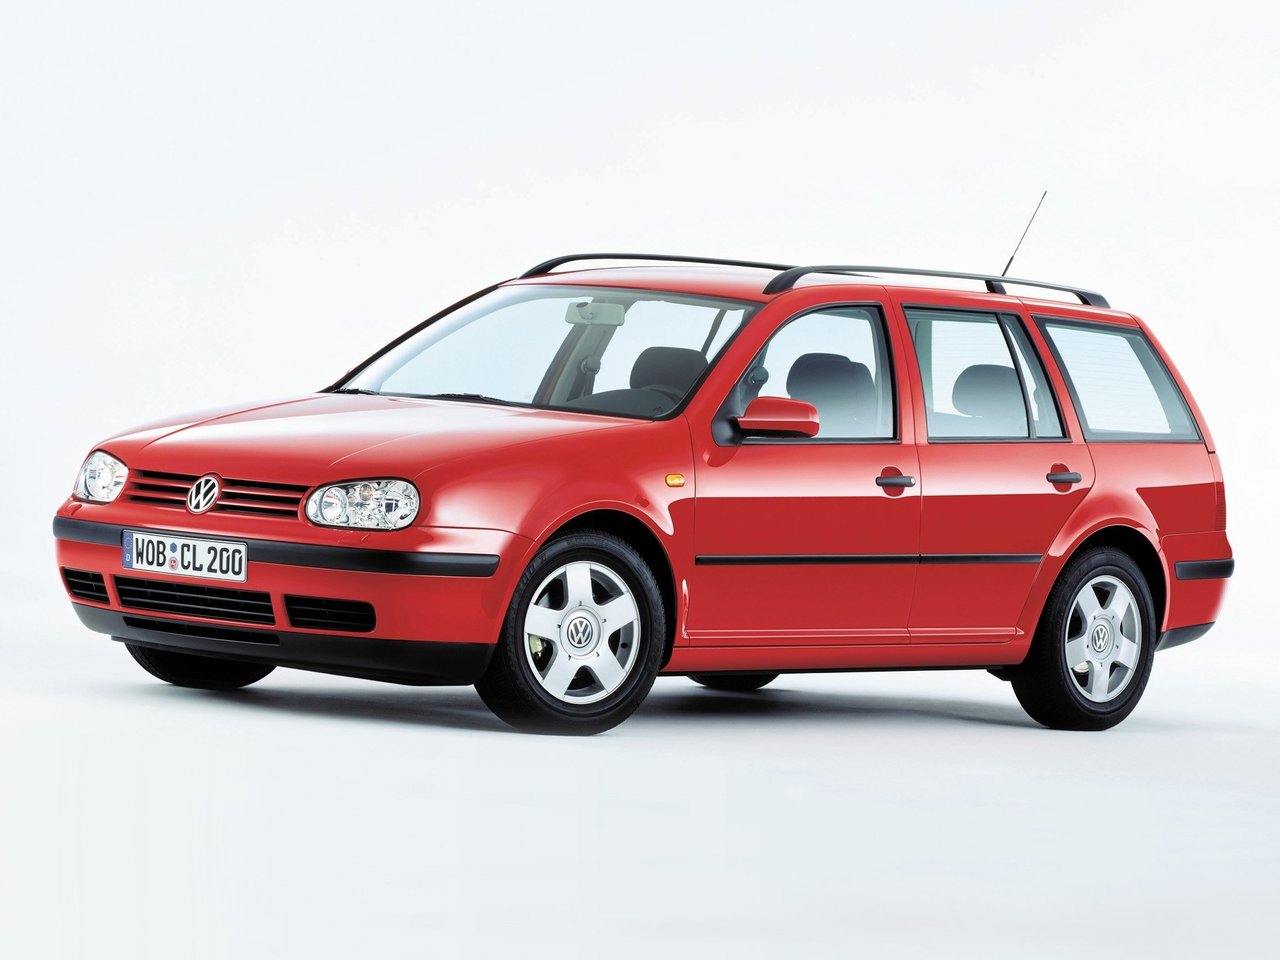 Расход газа одинадцати комплектаций универсала пять дверей Volkswagen Golf. Разница стоимости заправки газом и бензином. Автономный пробег до и после установки ГБО.